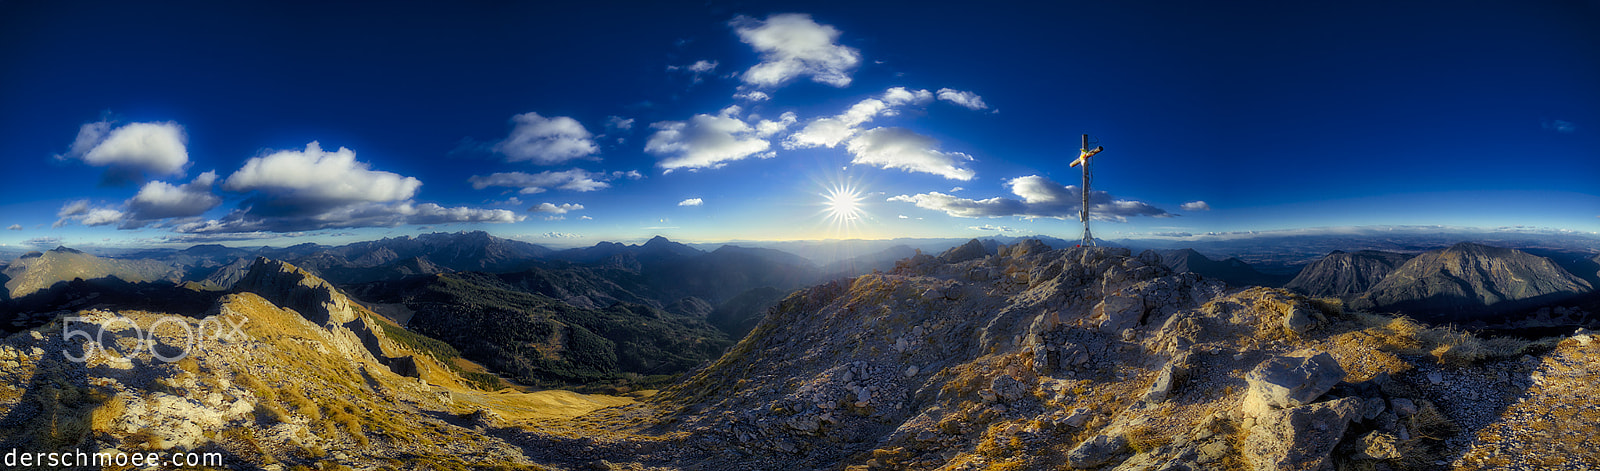 Canon EOS-1D X sample photo. Happynewyear ! sunset on the koschutnikturm mountain photography